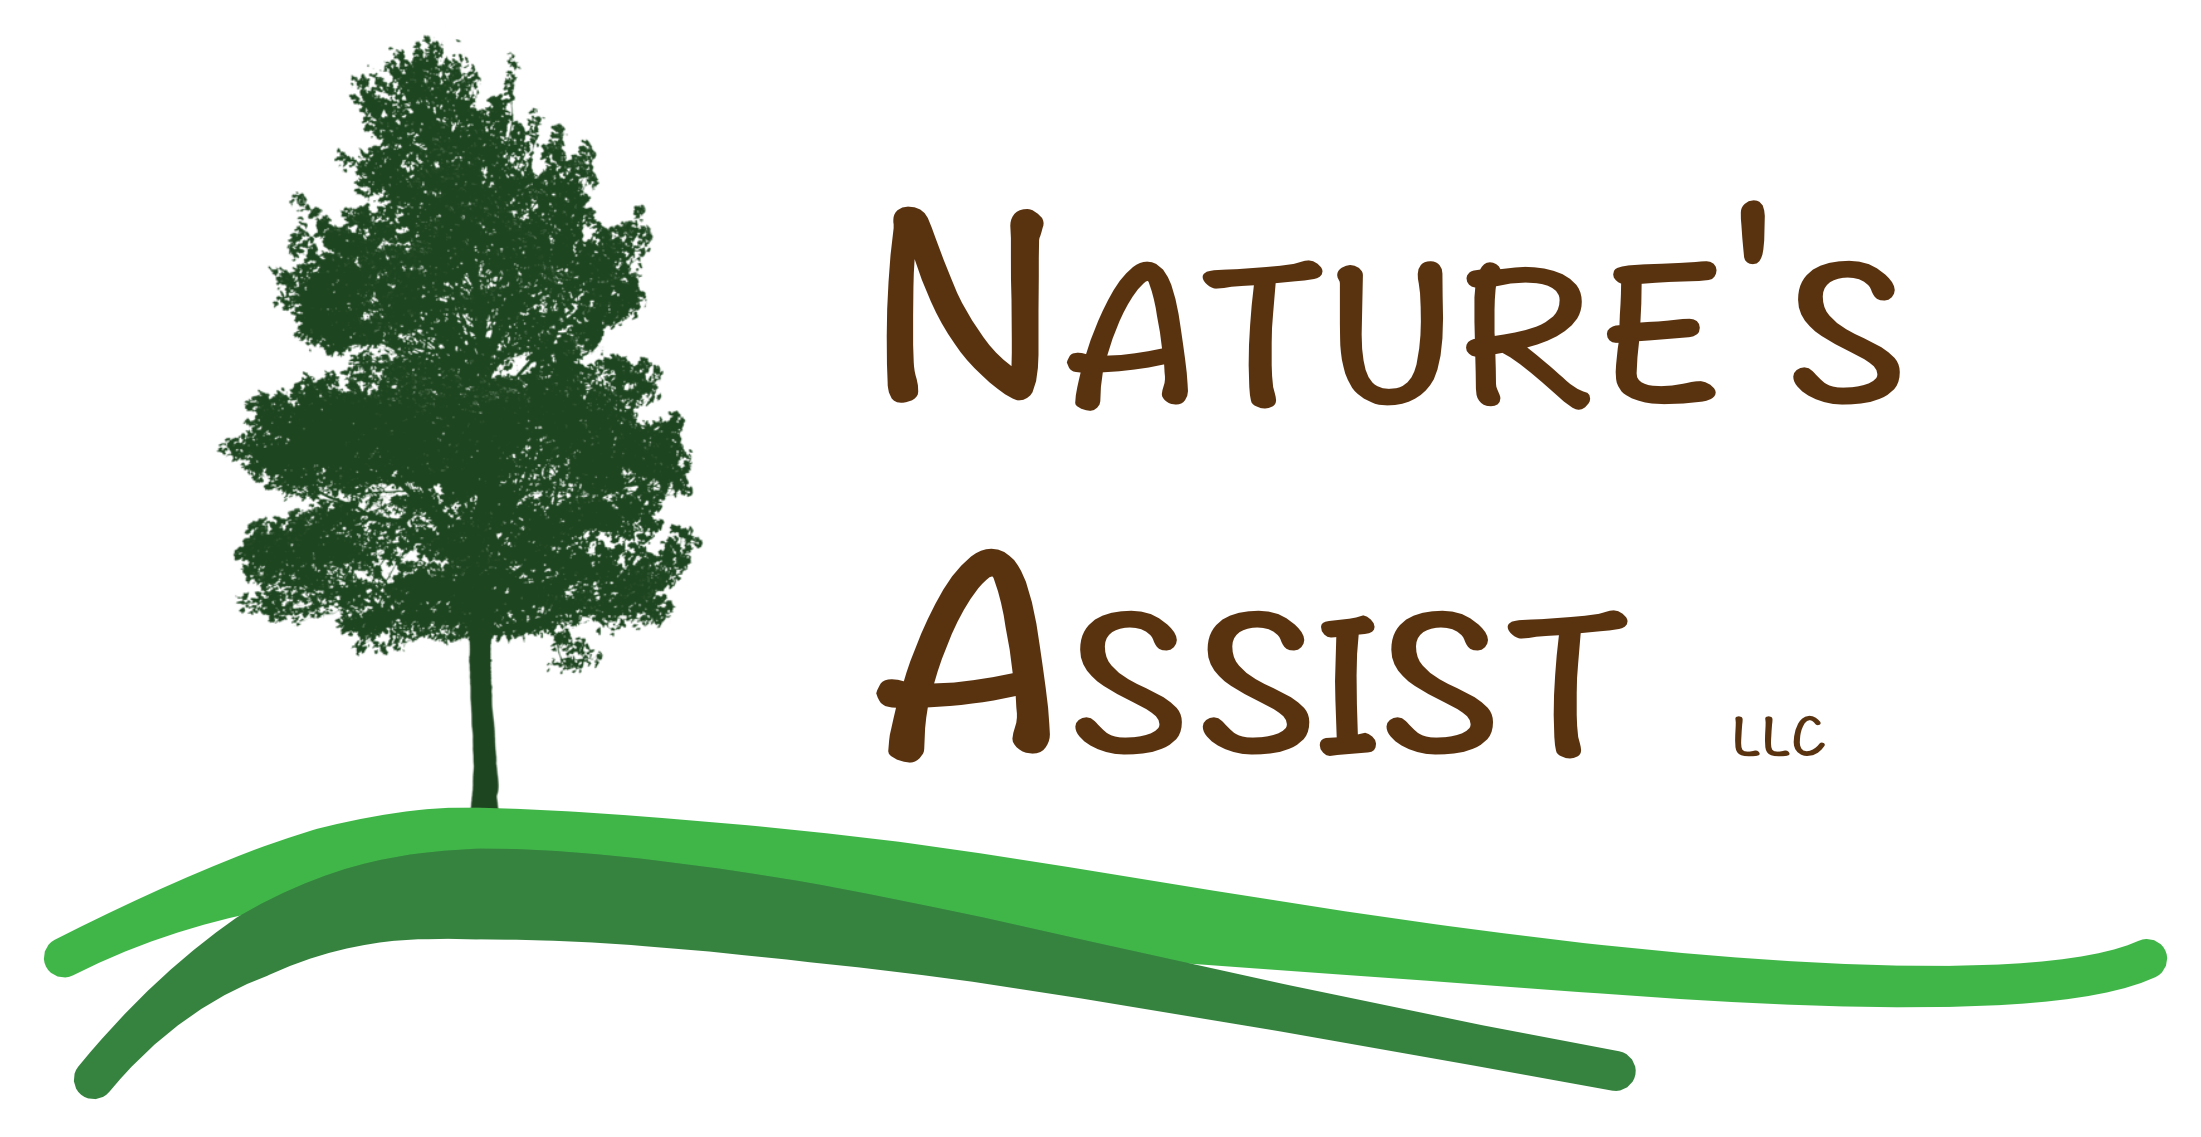 Nature's Assist LLC